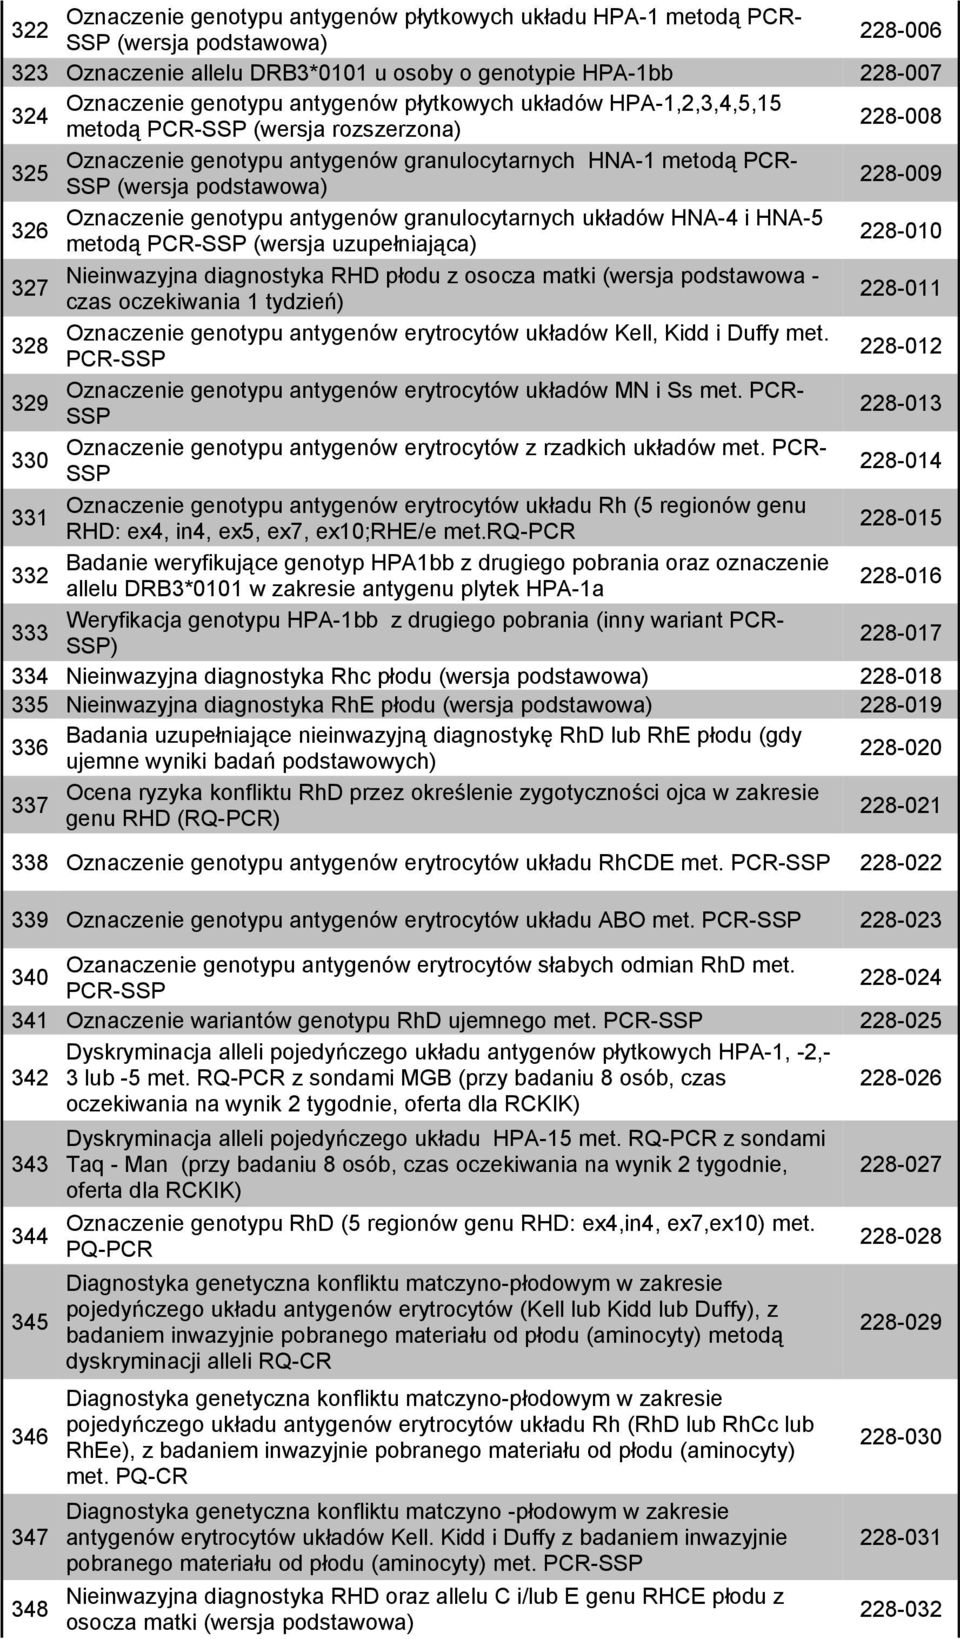 Oznaczenie genotypu antygenów granulocytarnych układów HNA-4 i HNA-5 metodą PCR-SSP (wersja uzupełniająca) 228-010 327 Nieinwazyjna diagnostyka RHD płodu z osocza matki (wersja podstawowa - czas